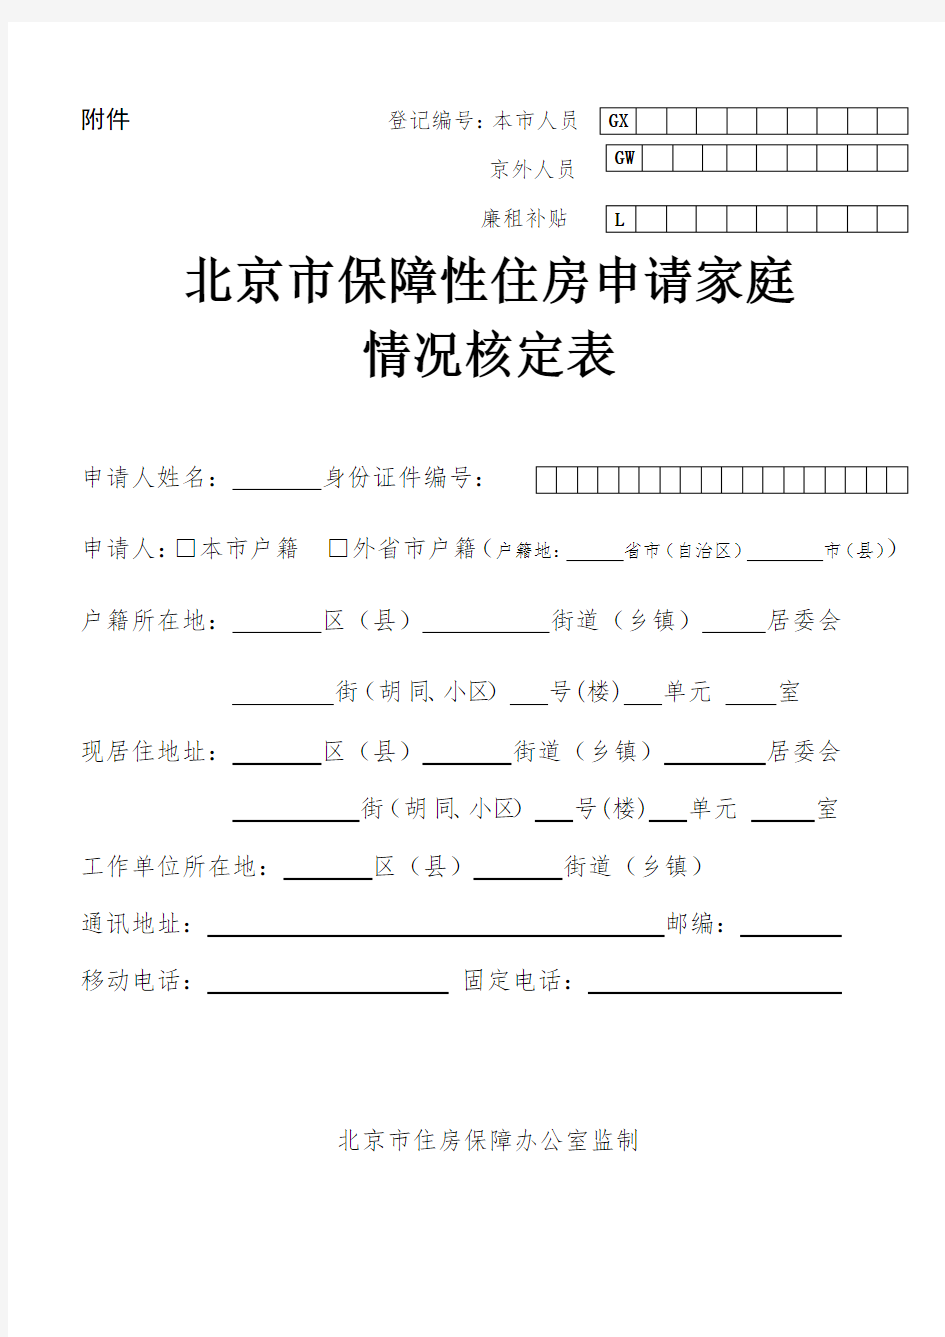 北京市保障性住房申请家庭情况核定表最新版